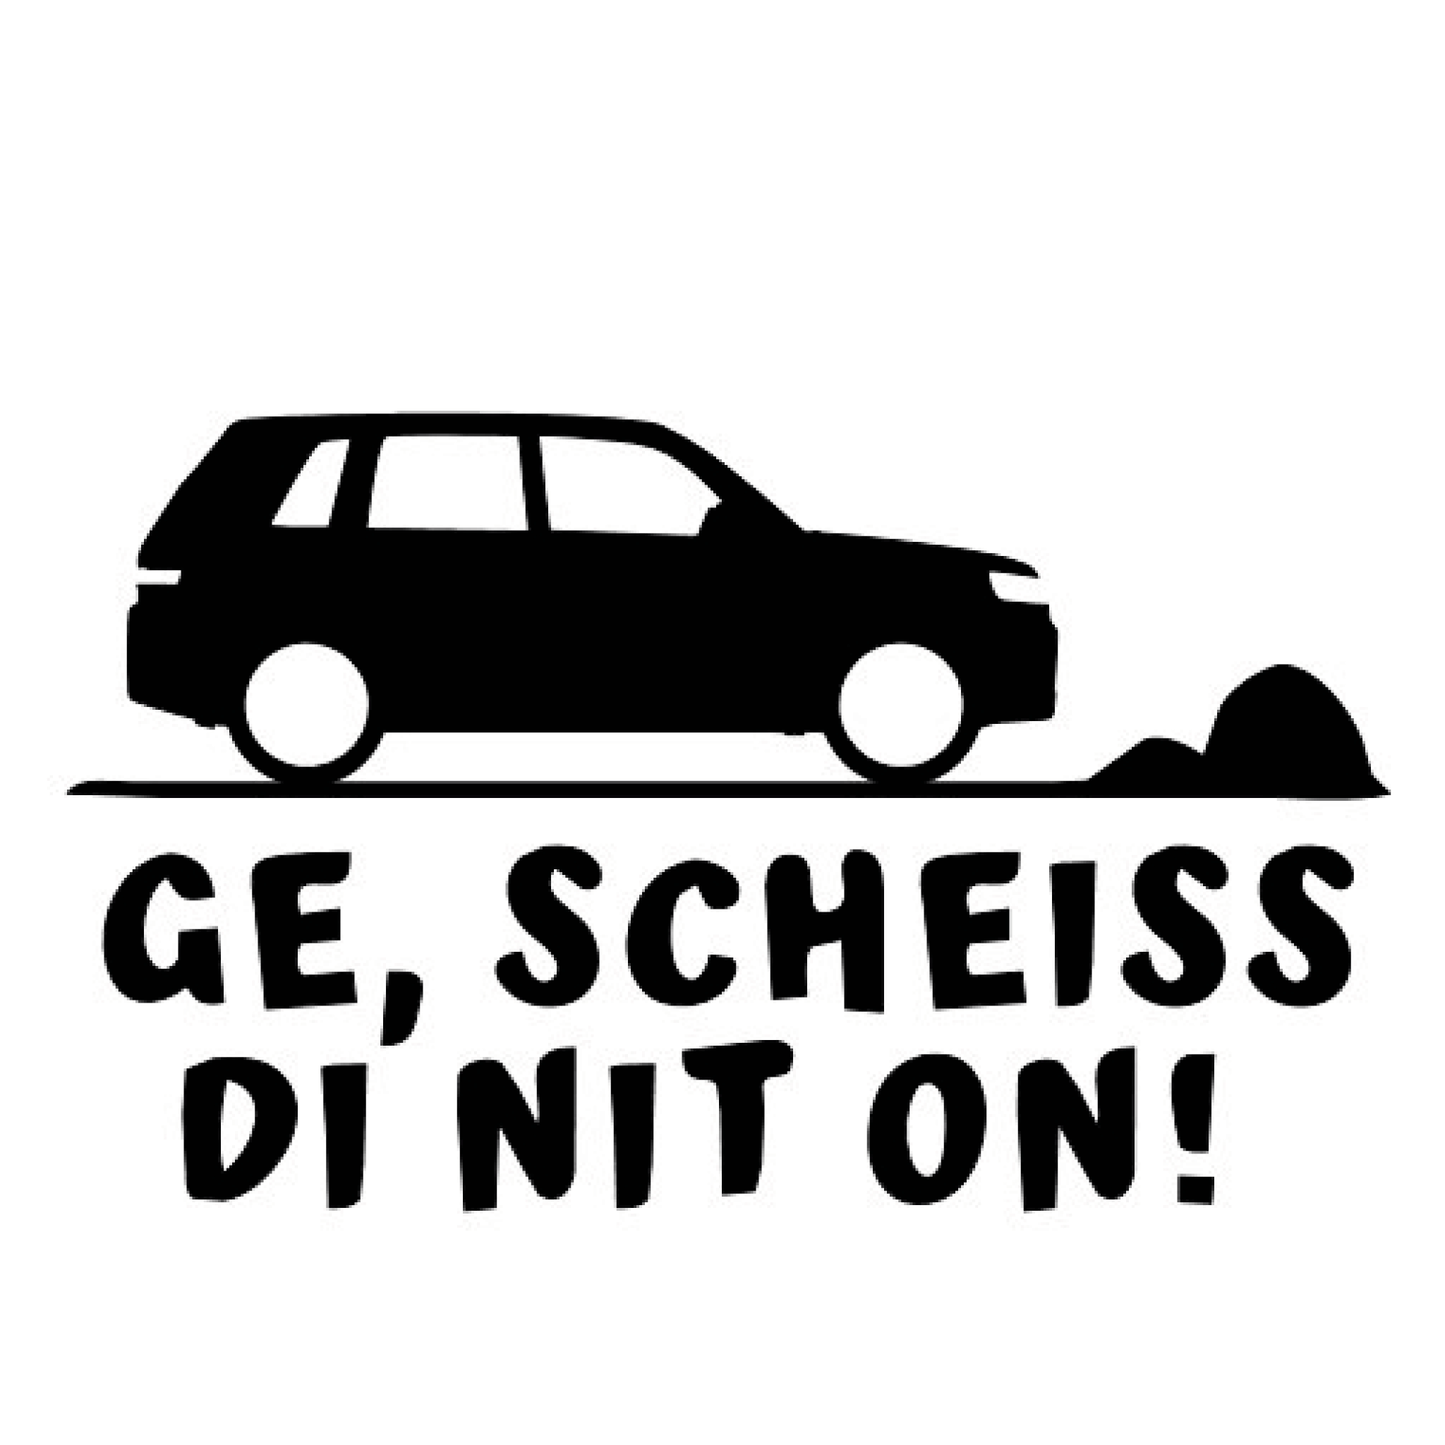 "Ge, scheiss di net on" Sticker - Red-Edition Design